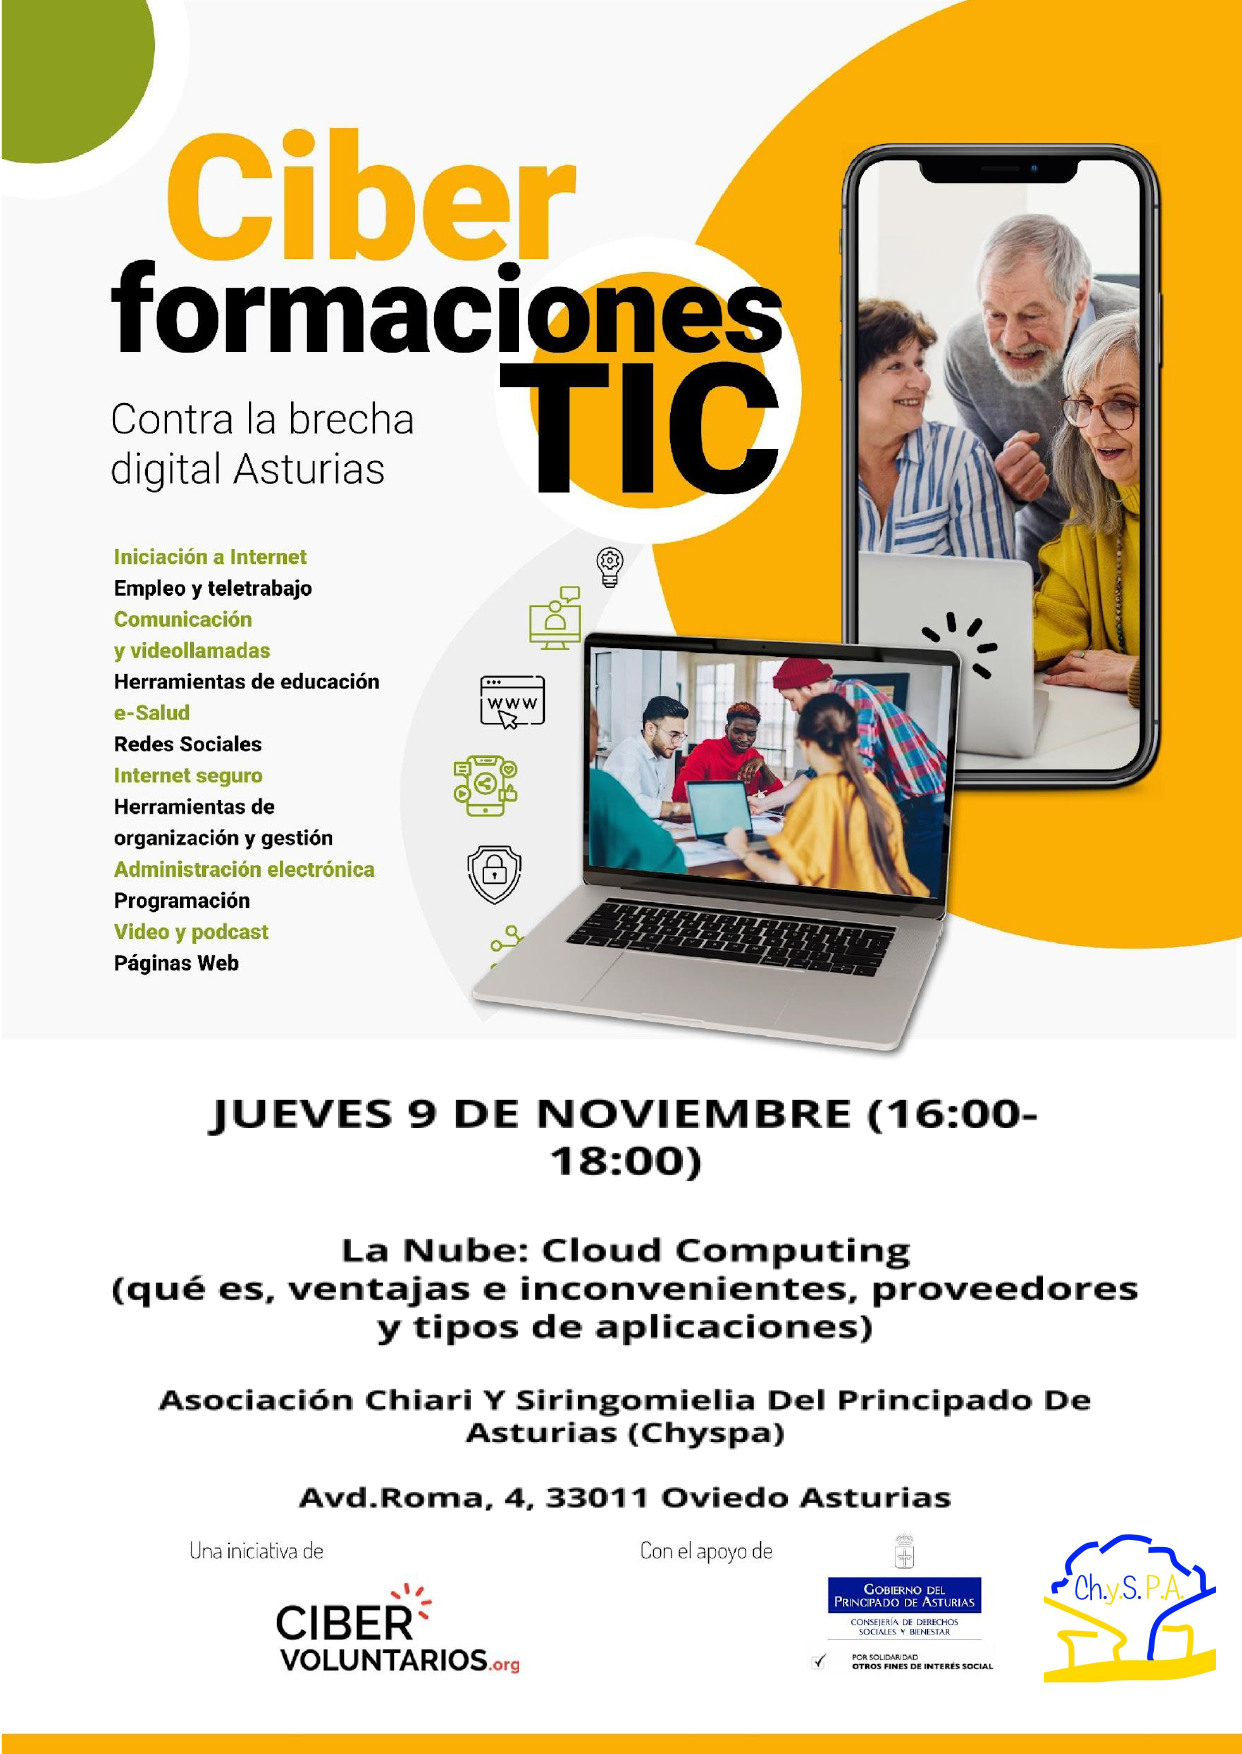 El lunes 9 de noviembre damos comienzo al taller contra la brecha digital, a las 16:00h en Hotel de asociaciones, Avd. de Roma 4 (Oviedo),constará de 4 jornadas. ¡No te las pierdas!